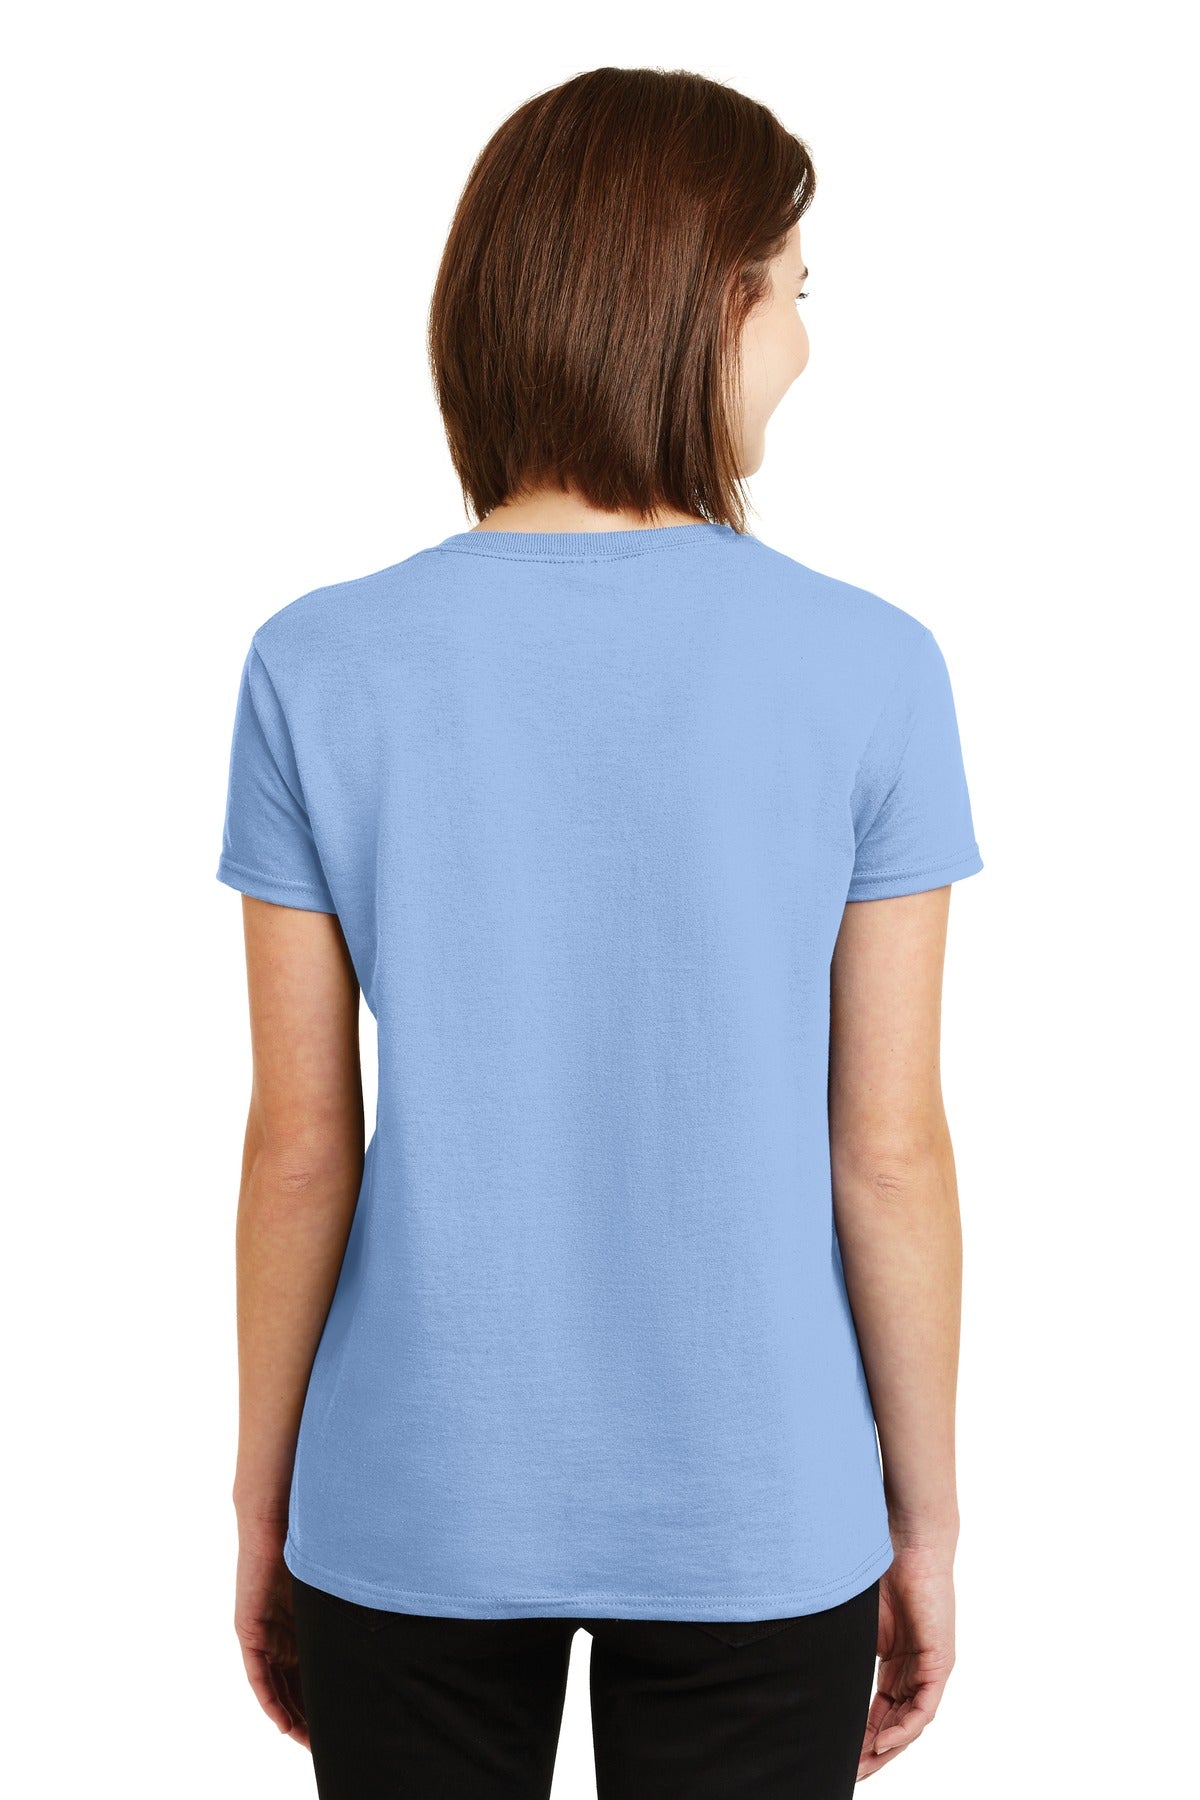 Gildan® - Ladies Ultra Cotton® 100% US Cotton T-Shirt. 2000L [Light Blue] - DFW Impression